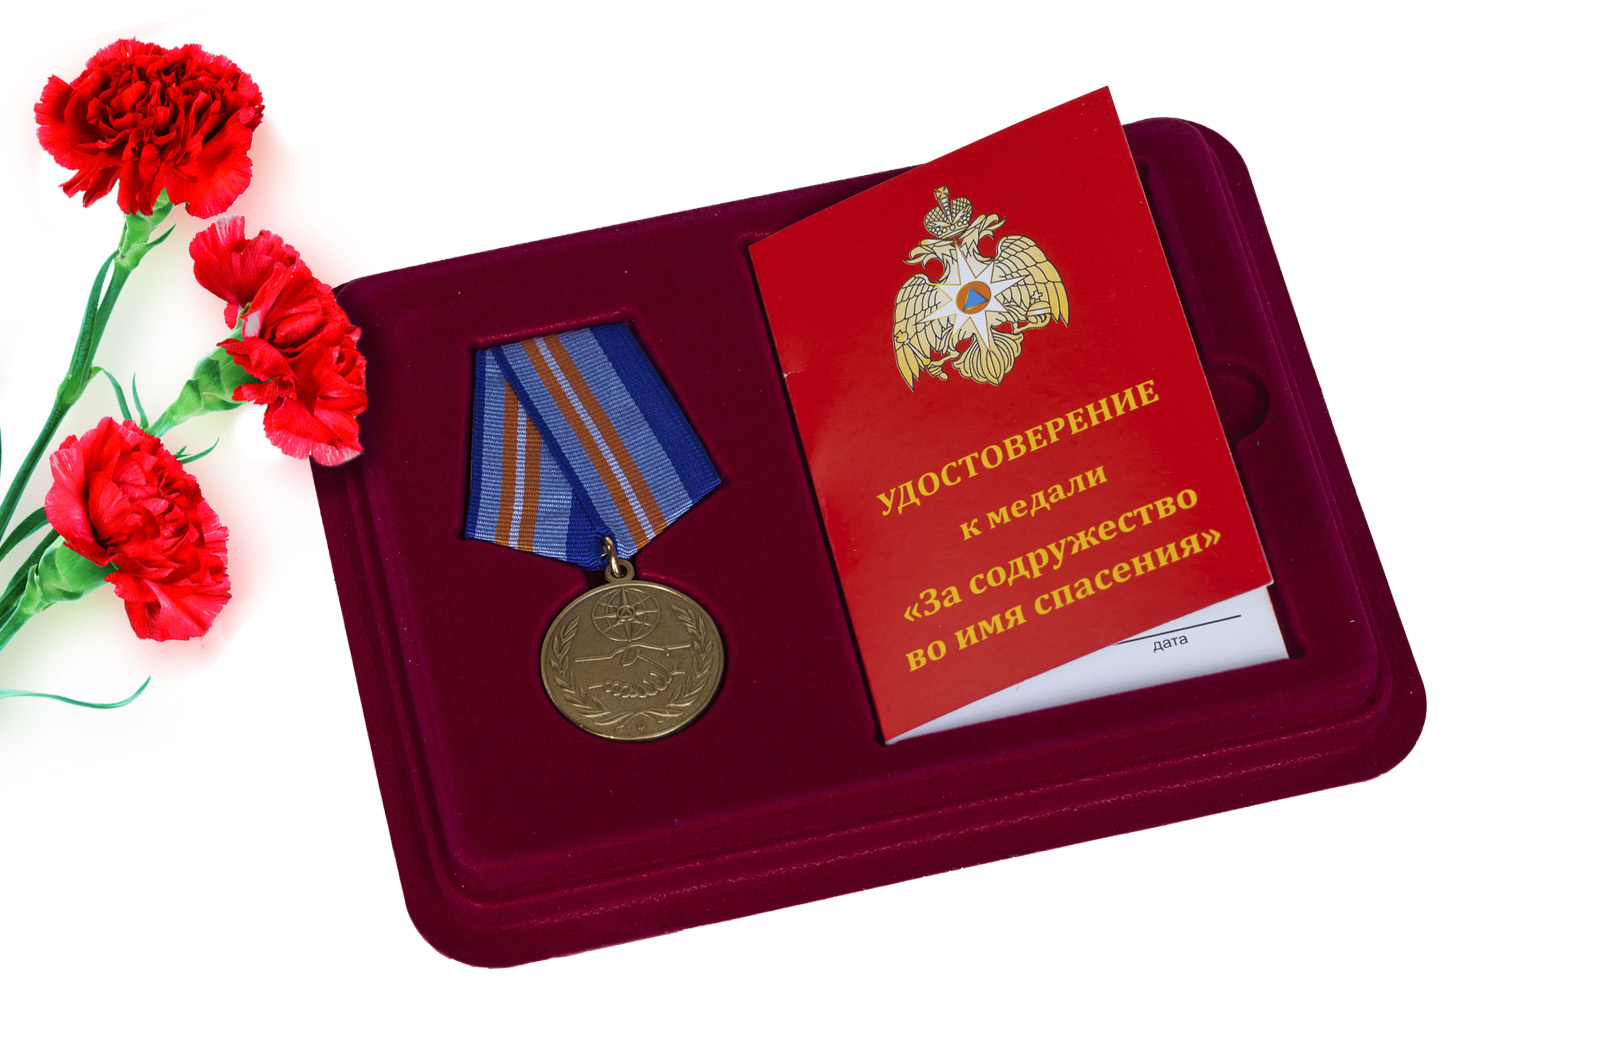 Купить ведомственную медаль За содружество во имя спасения с доставкой в ваш город